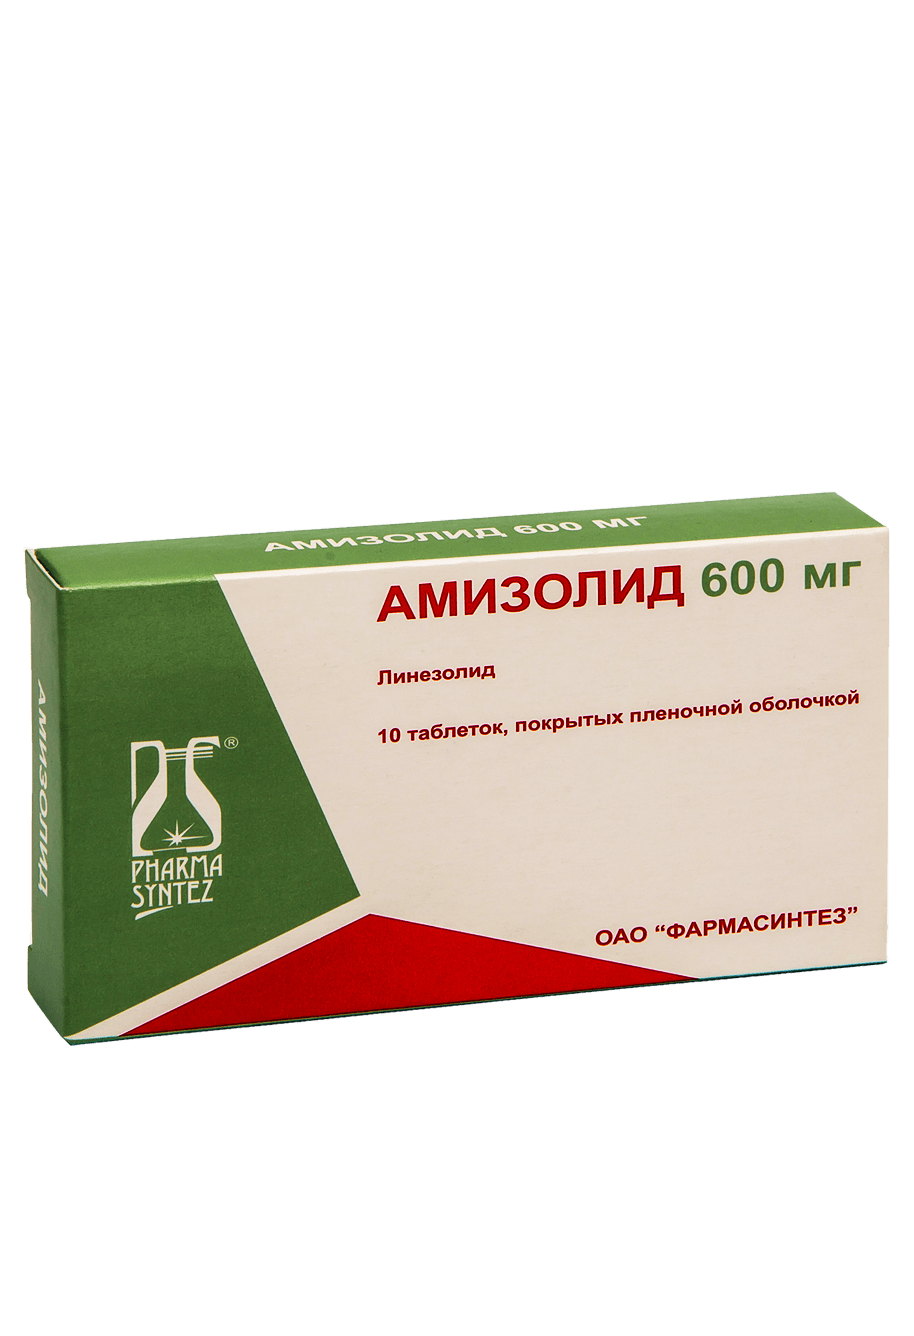 Амизолид (200 мг, 400 мг и 600 мг) официальная инструкция |  .